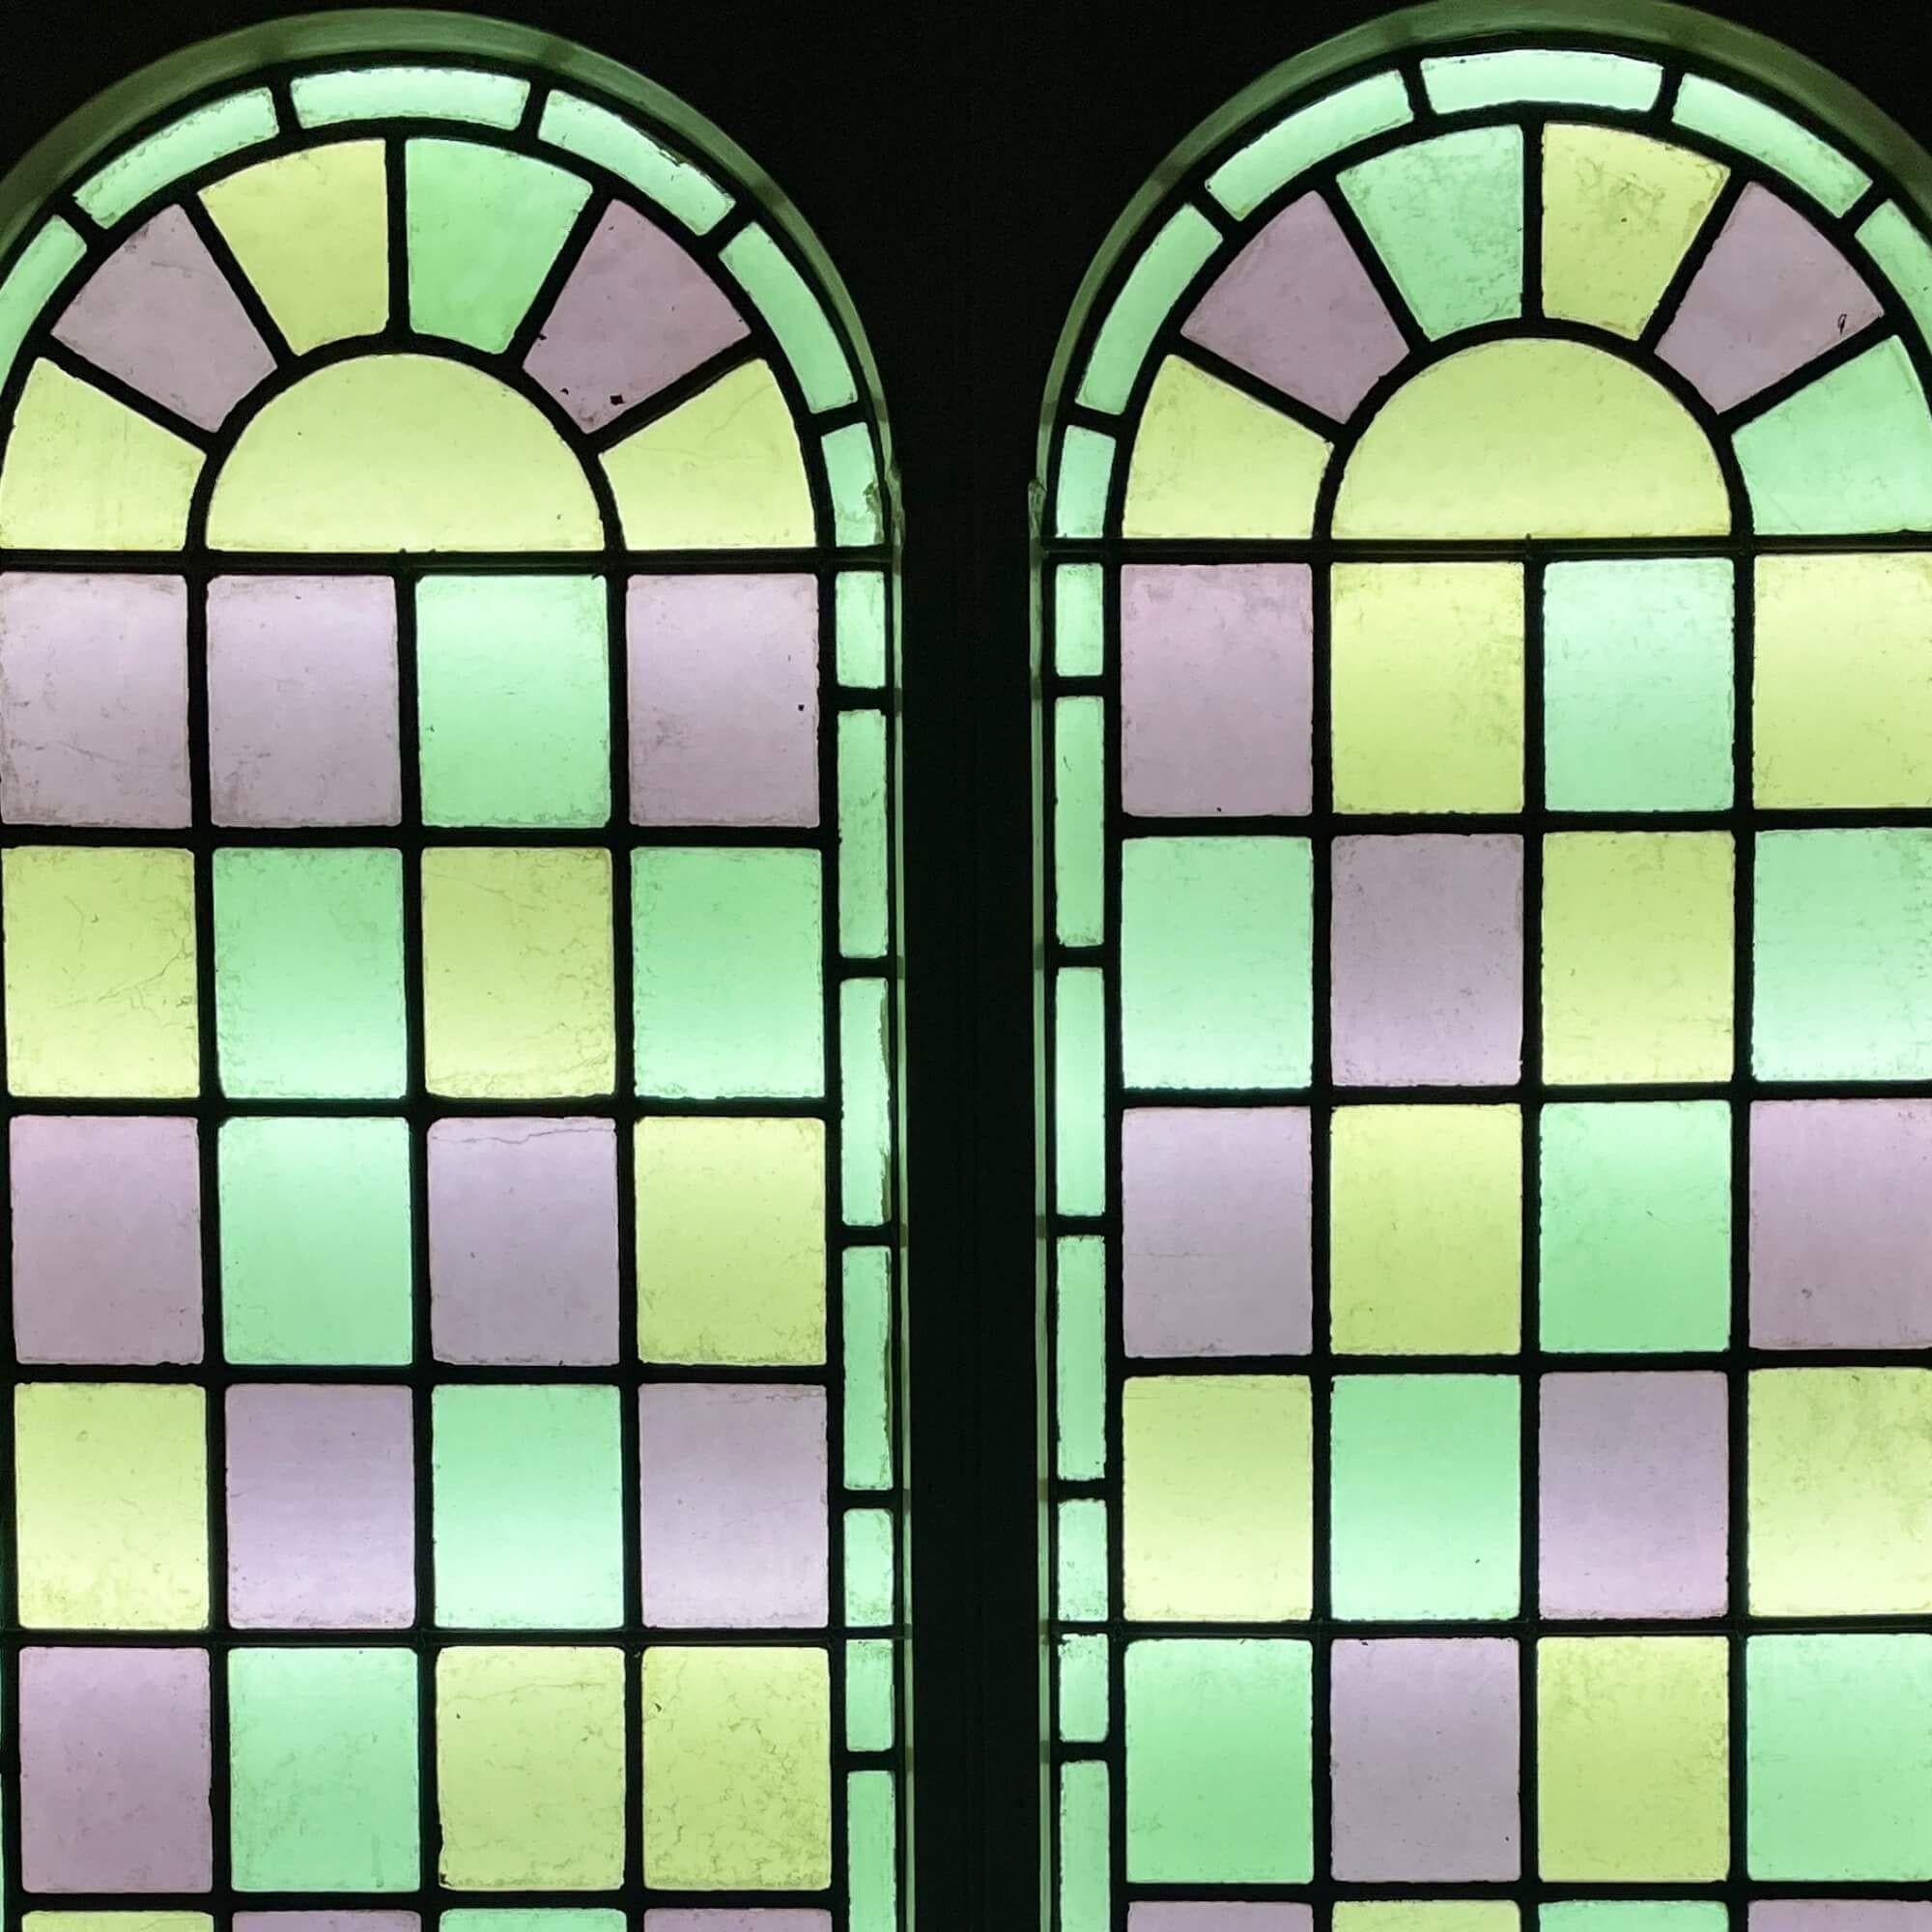 Ein großes, wiederhergestelltes, gewölbtes Buntglas-Doppelfenster mit Rahmen, das aus einer Kapelle von 1850 stammt. Dieses große, farbenfrohe Doppelfenster ist derzeit in einem originalen Kiefernrahmen befestigt.

Die um 1880 entstandenen Paneele